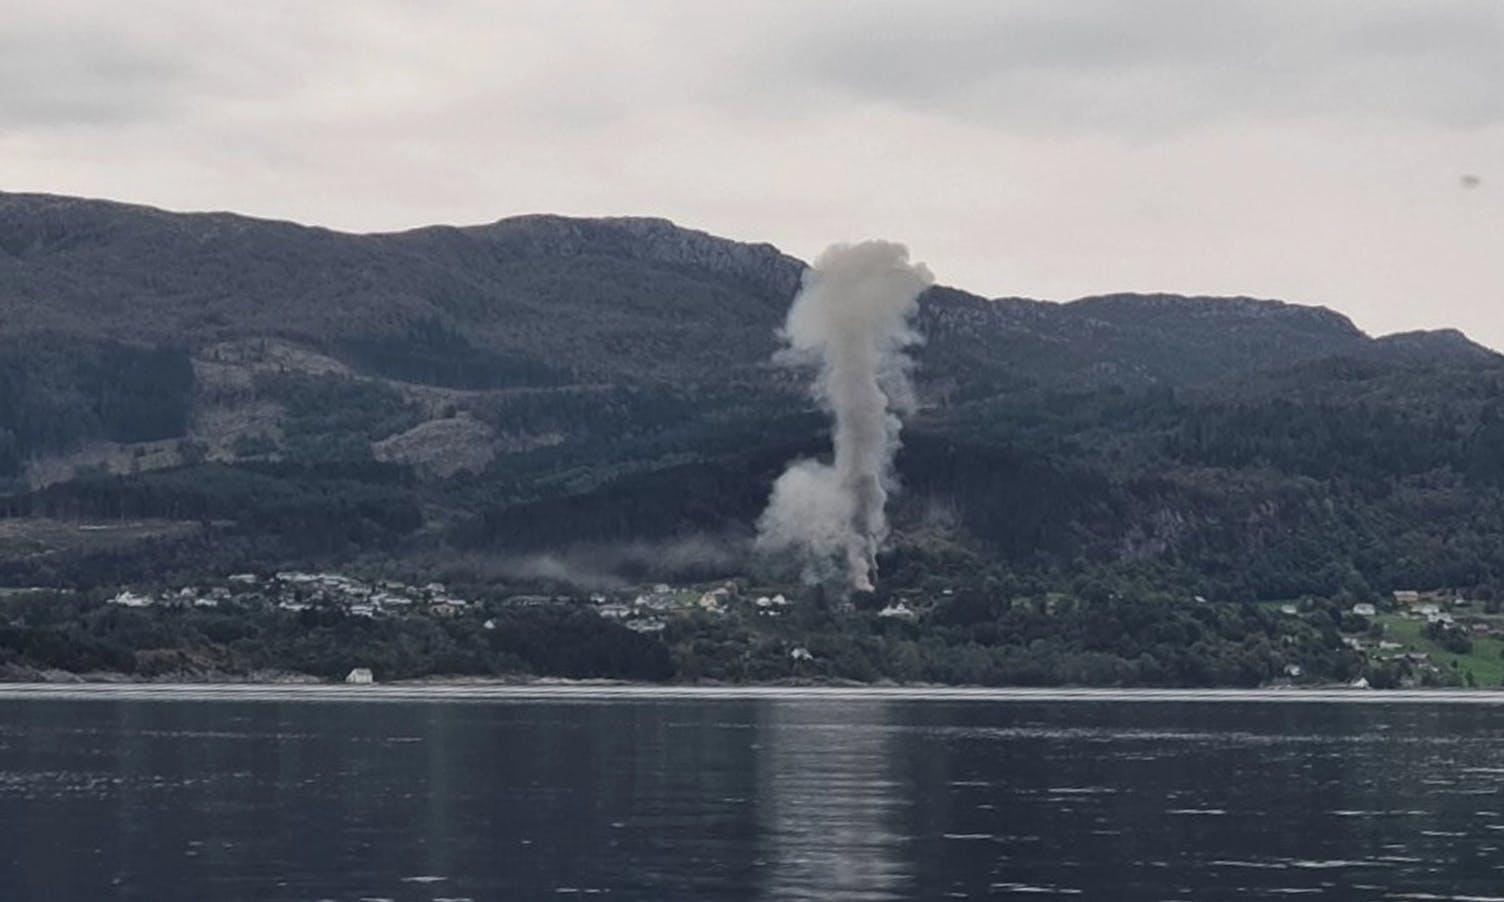 Atombombe, nei! Brannvesenet i Fusa har øving. (tips@midtsiden.no, foto: Tom André Hjelle)